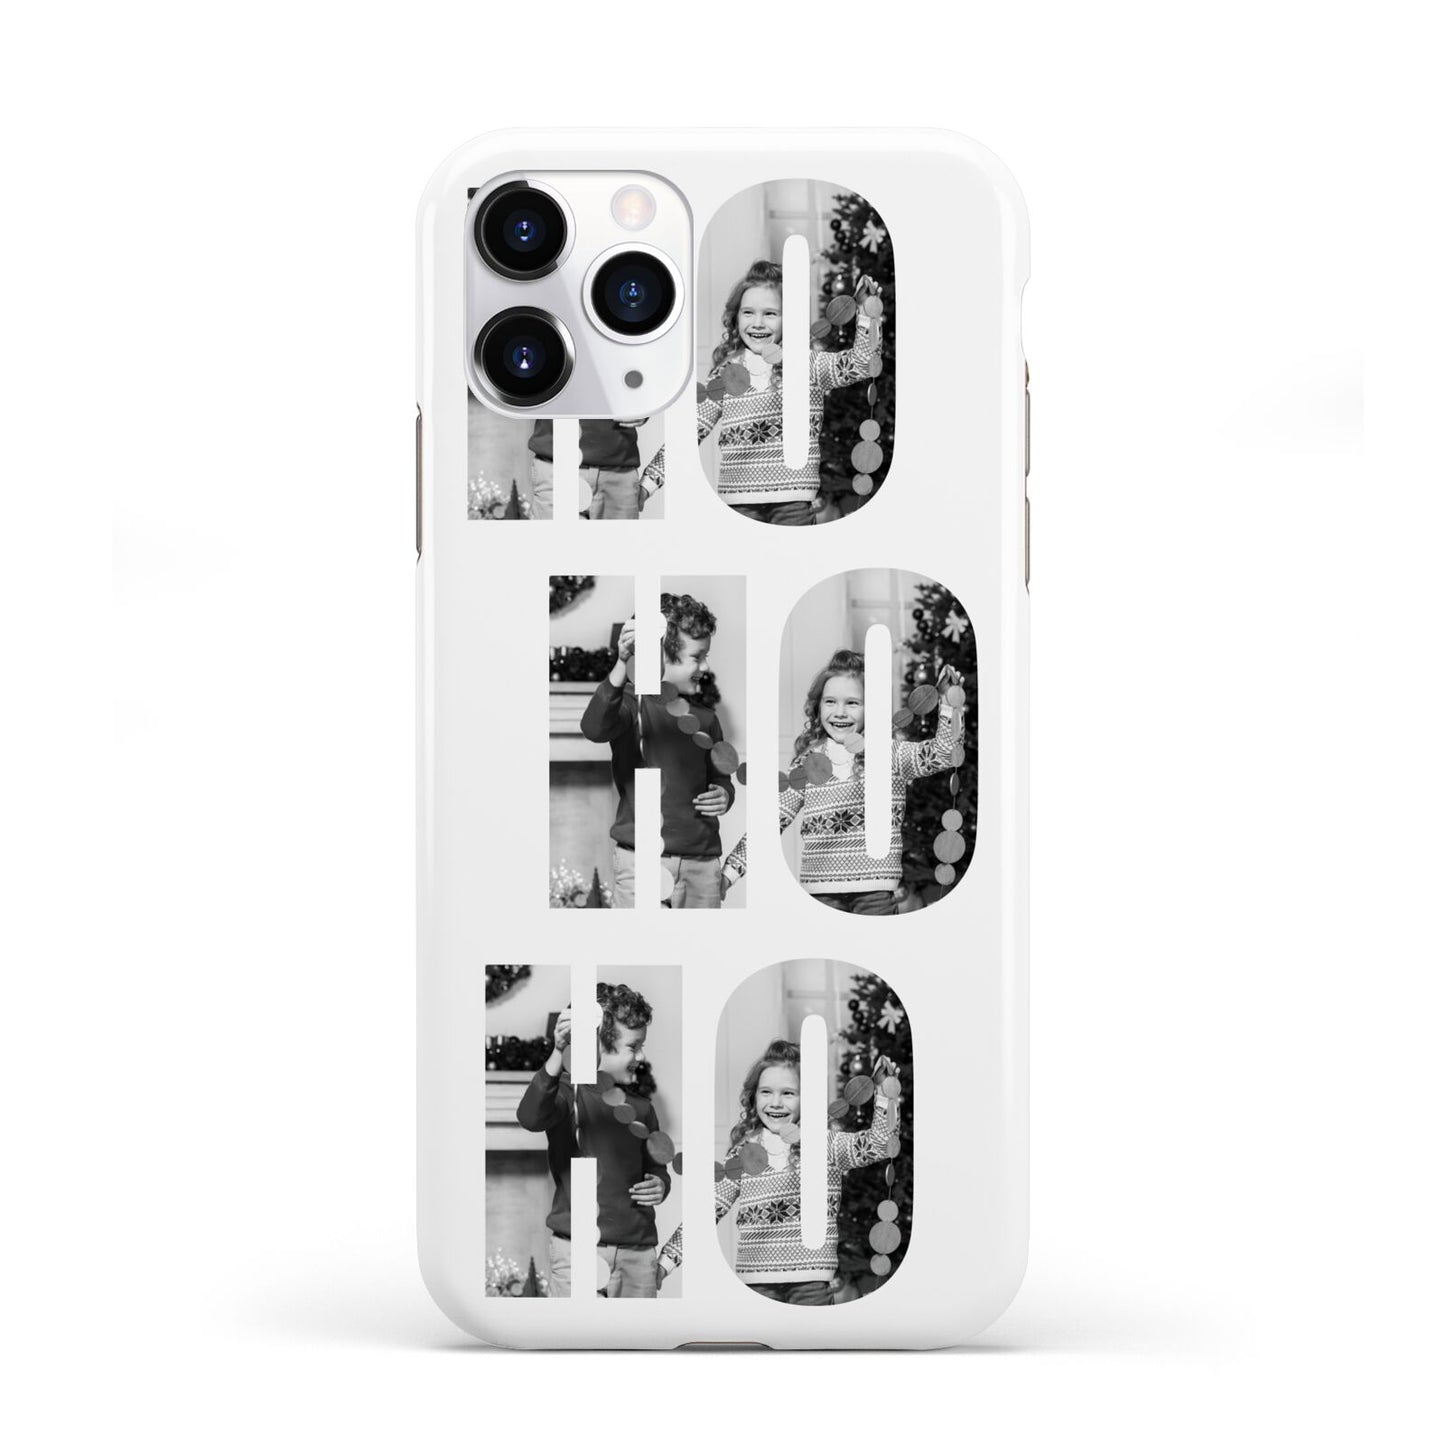 Ho Ho Ho Photo Upload Christmas iPhone 11 Pro 3D Tough Case